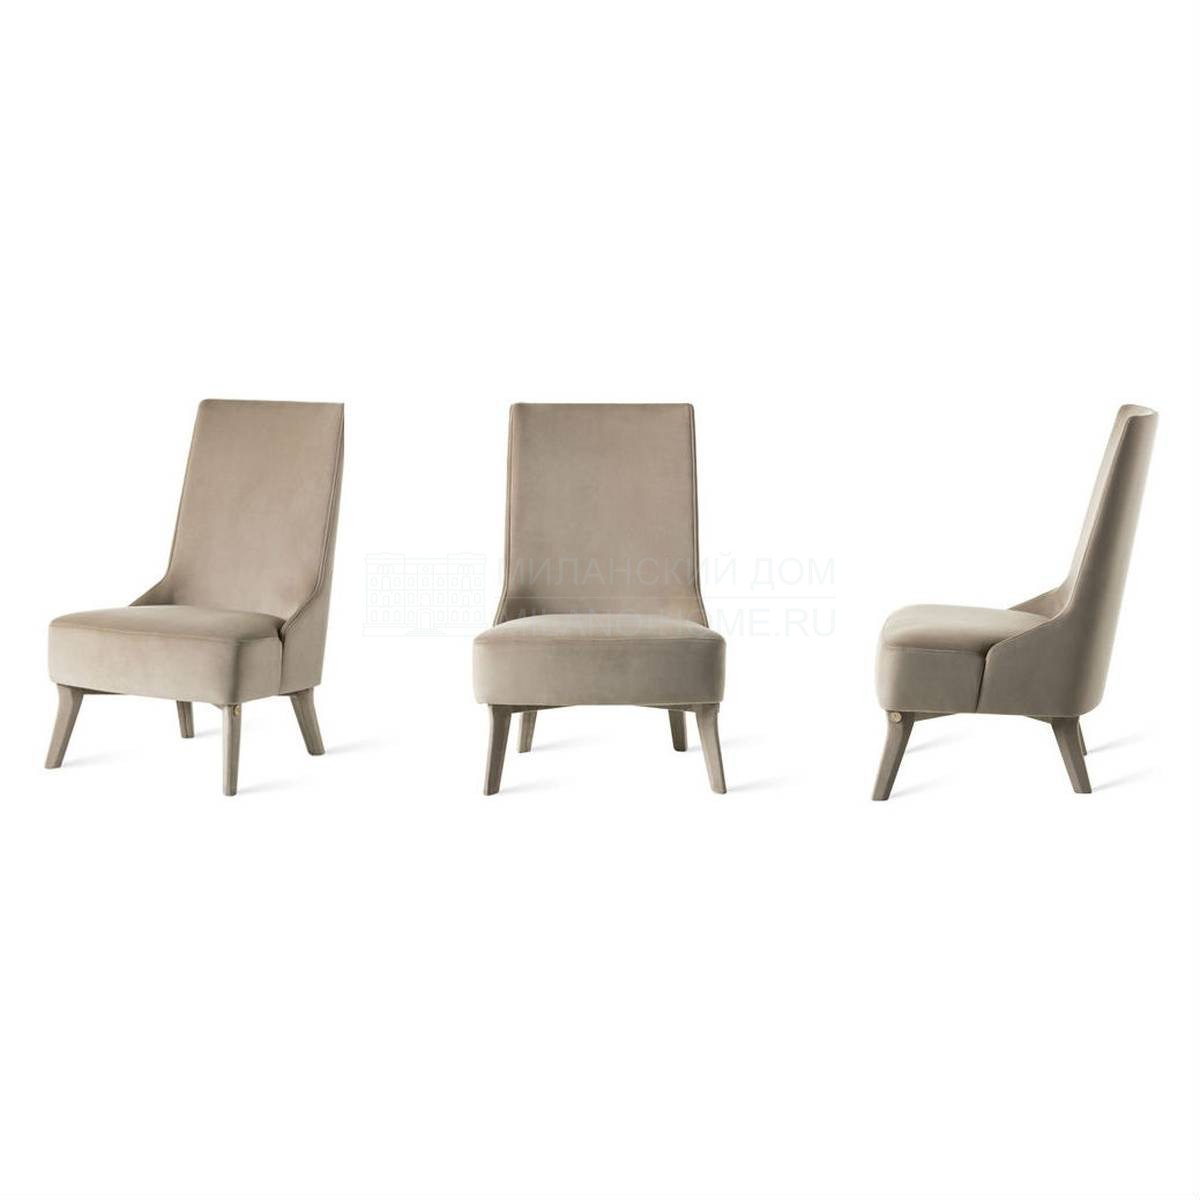 Кресло Madame armchair из Италии фабрики MEDEA (Life style)